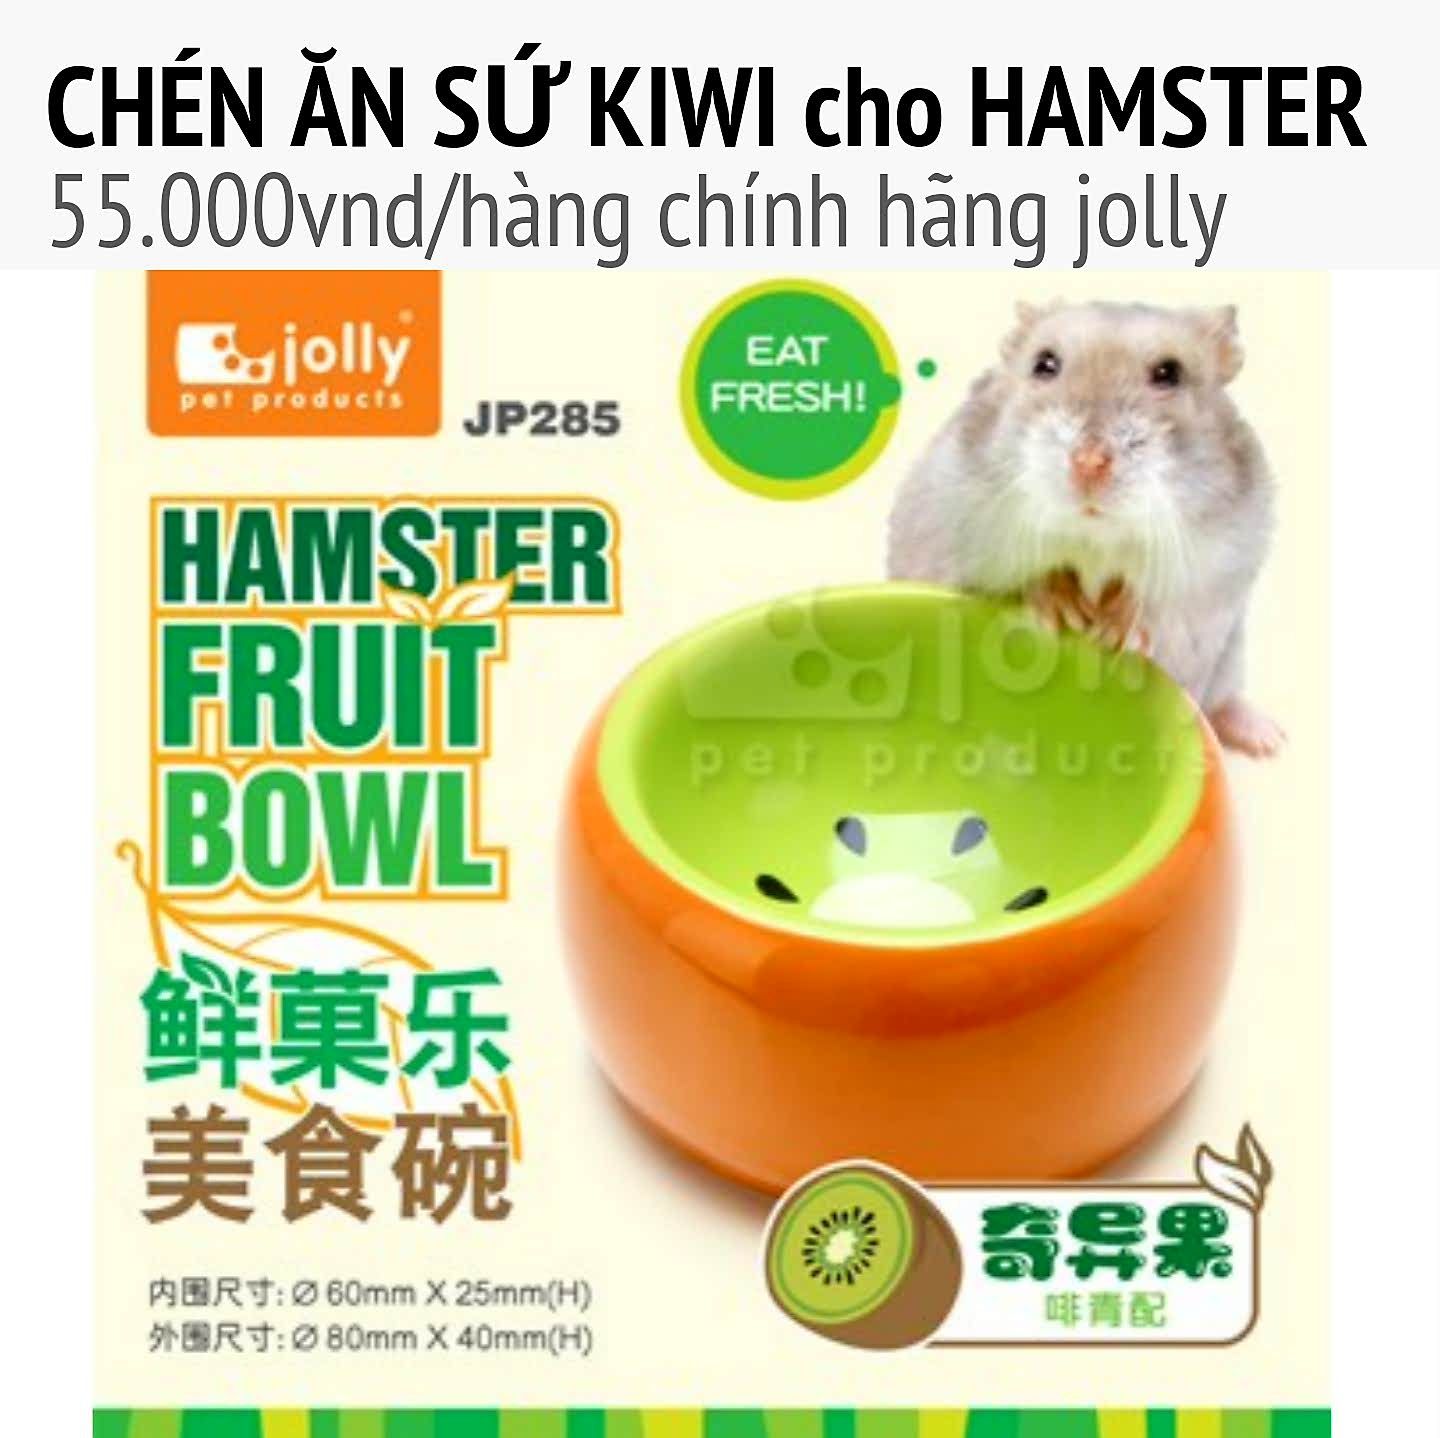 Chén ăn trái kiwi  jolly cho hamster